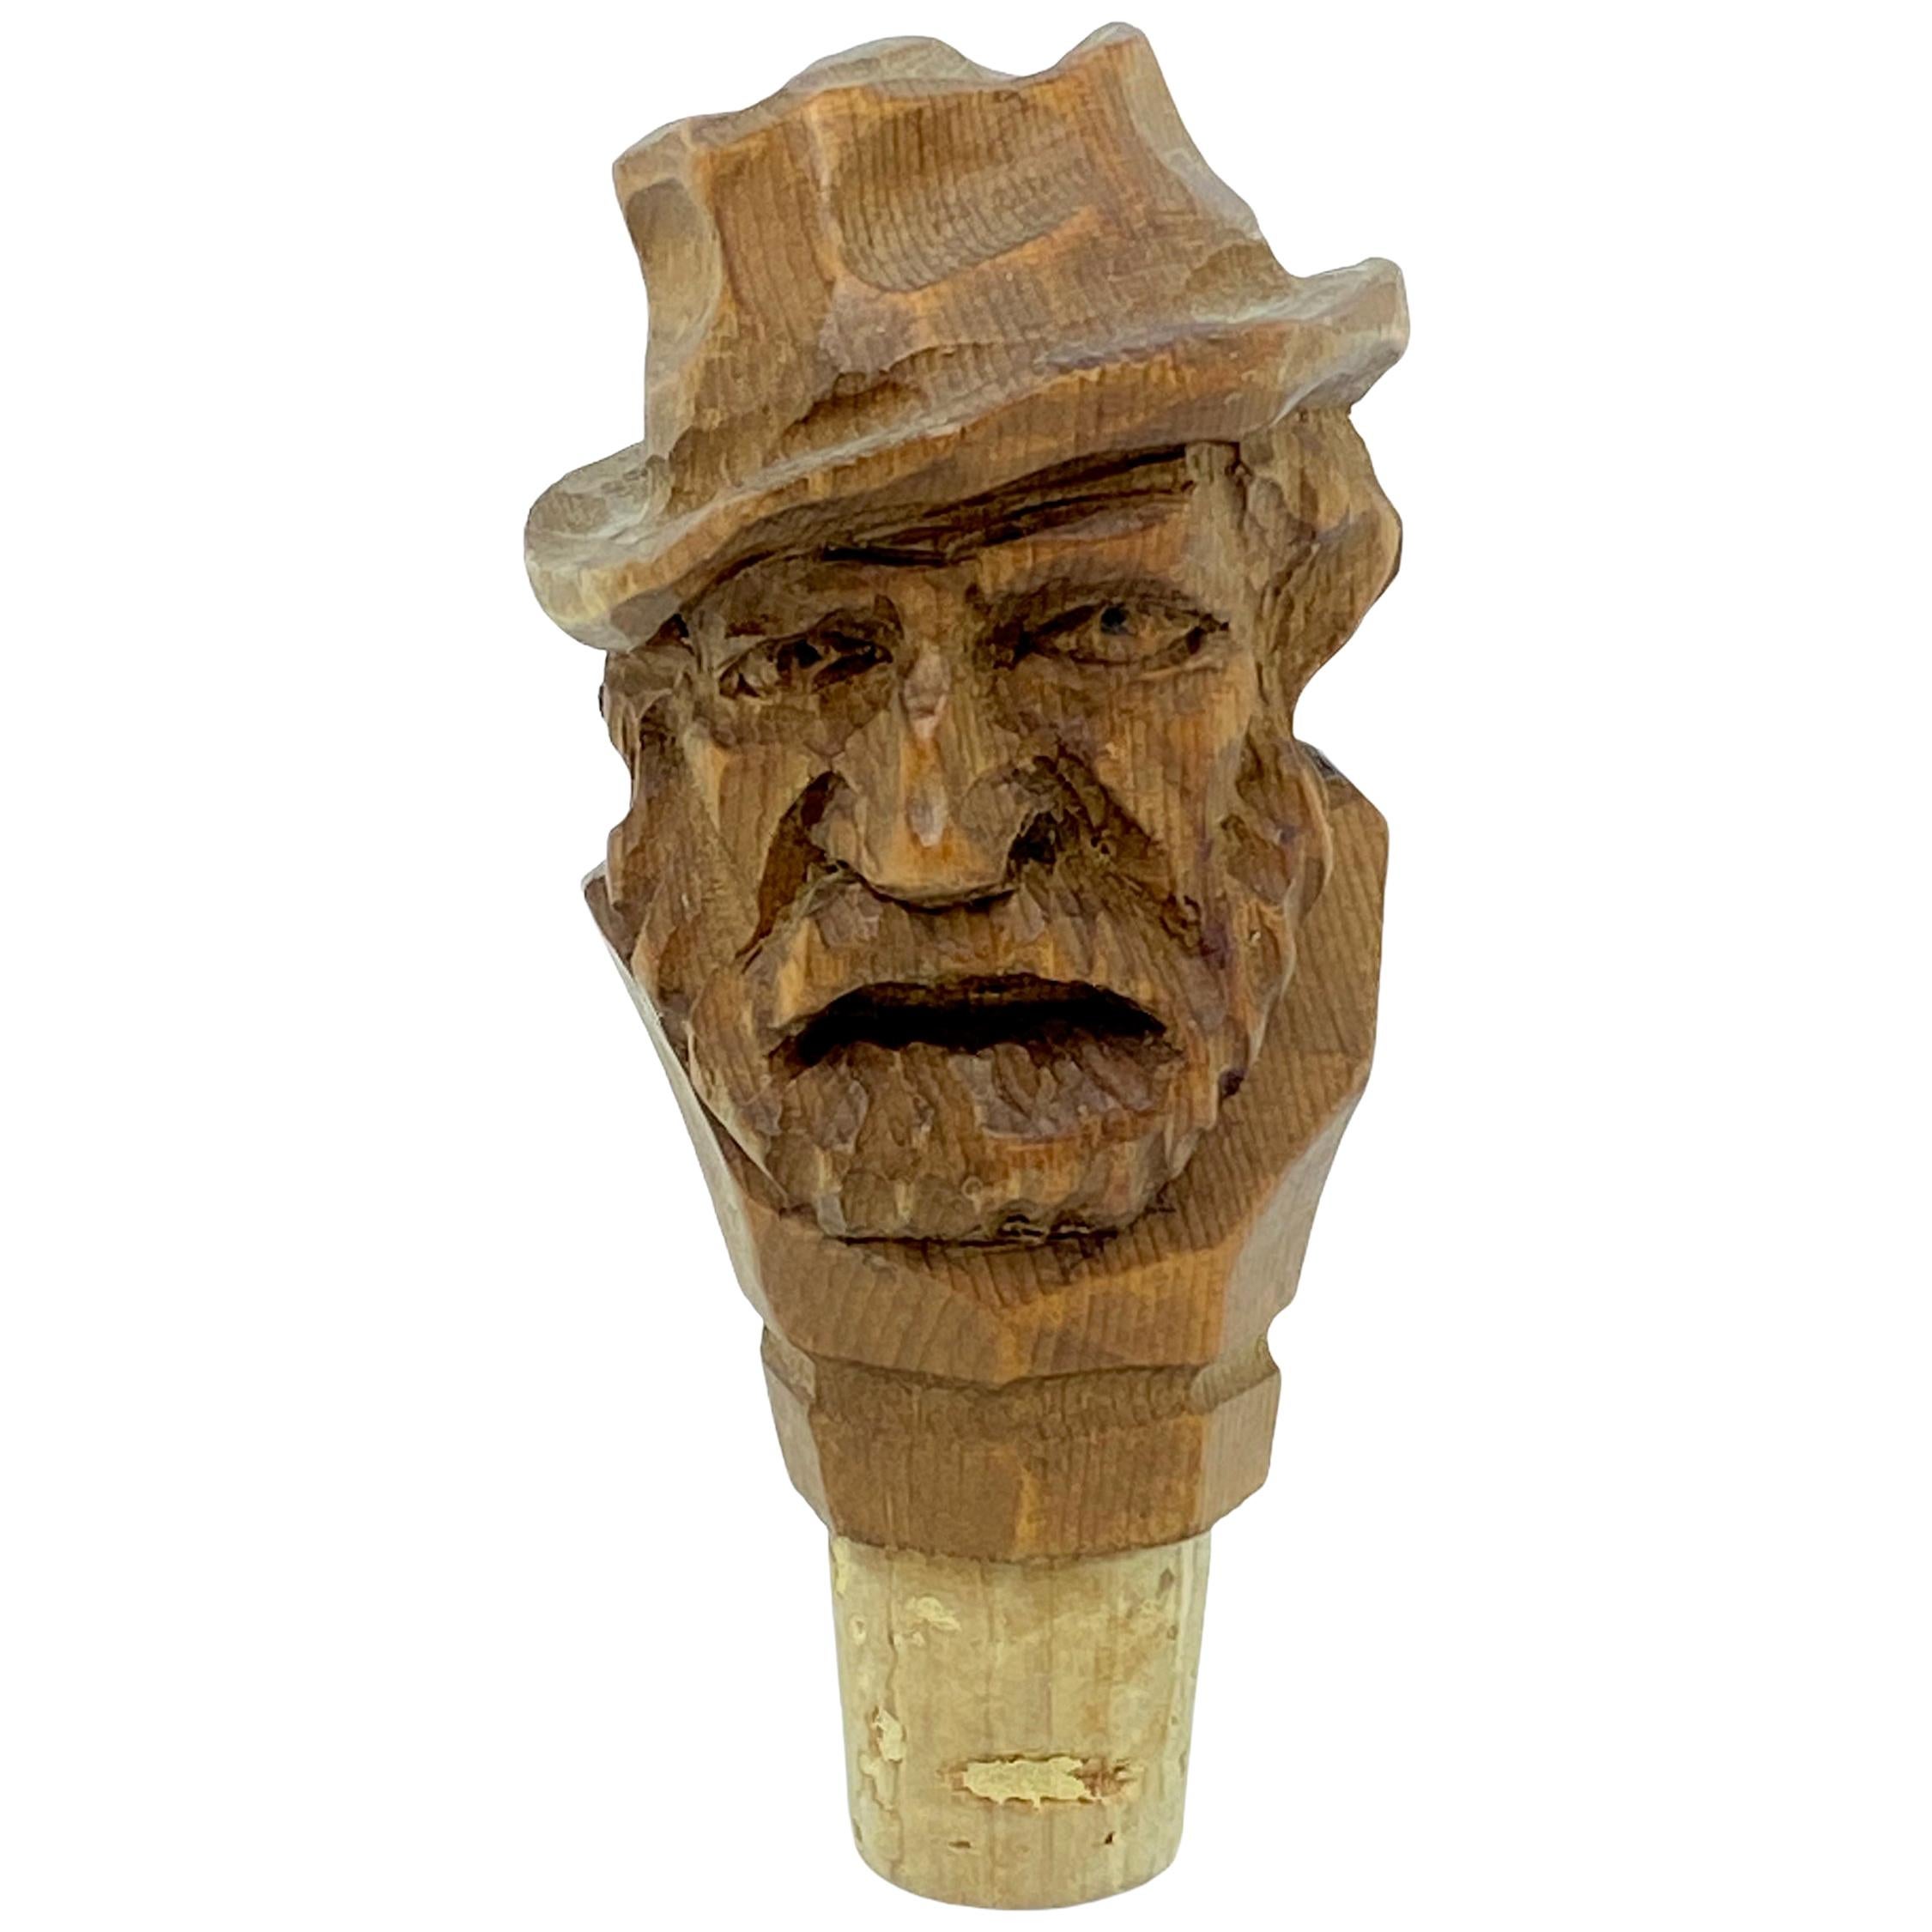 German Black Forest Wood Carved Figural Man Head Cork Bottle Stopper, 1930s